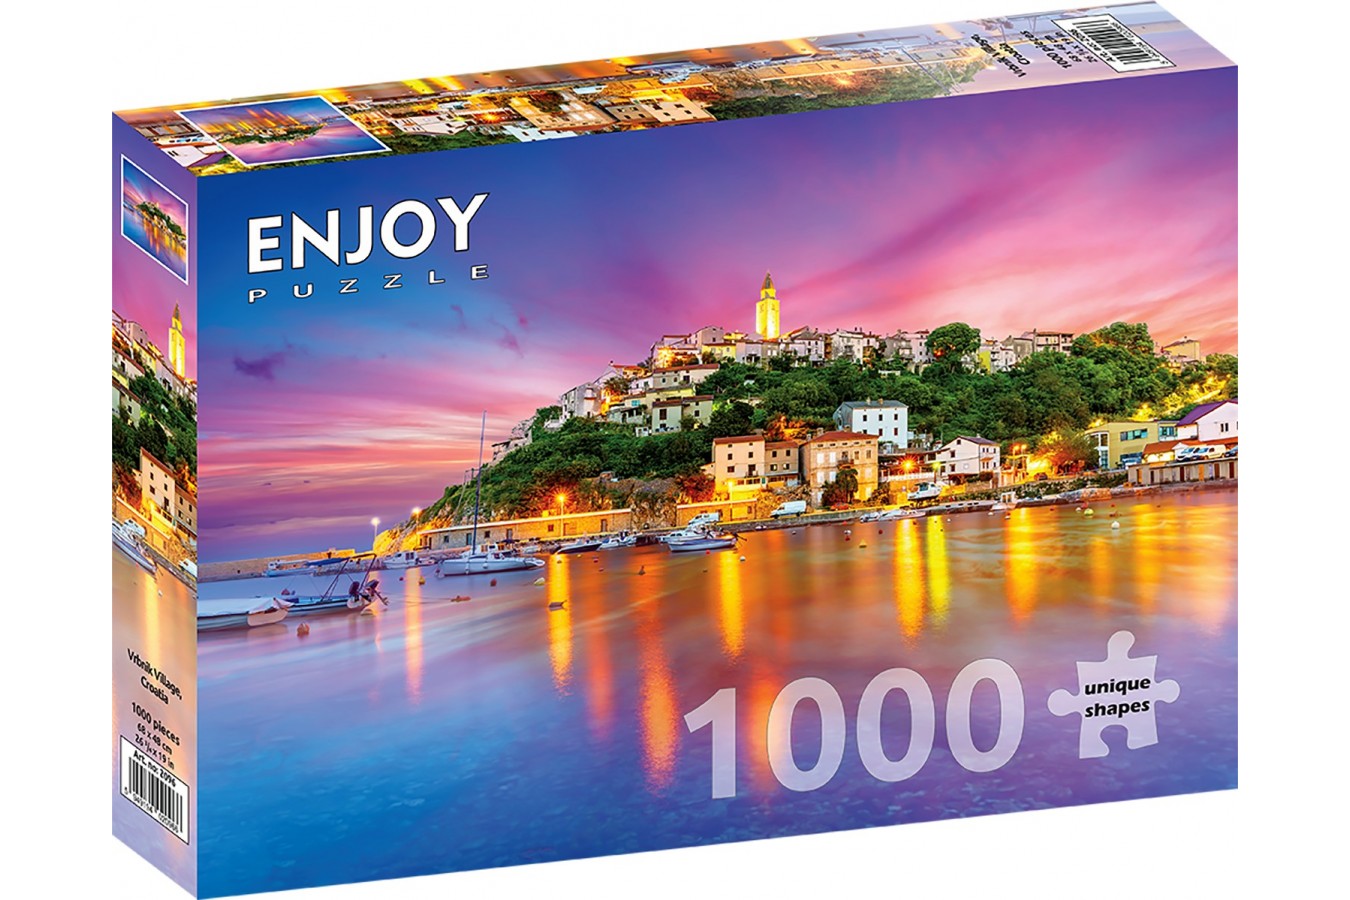 Puzzle 1000 piese ENJOY - Vrbnik Village, Croatia (Enjoy-2096)